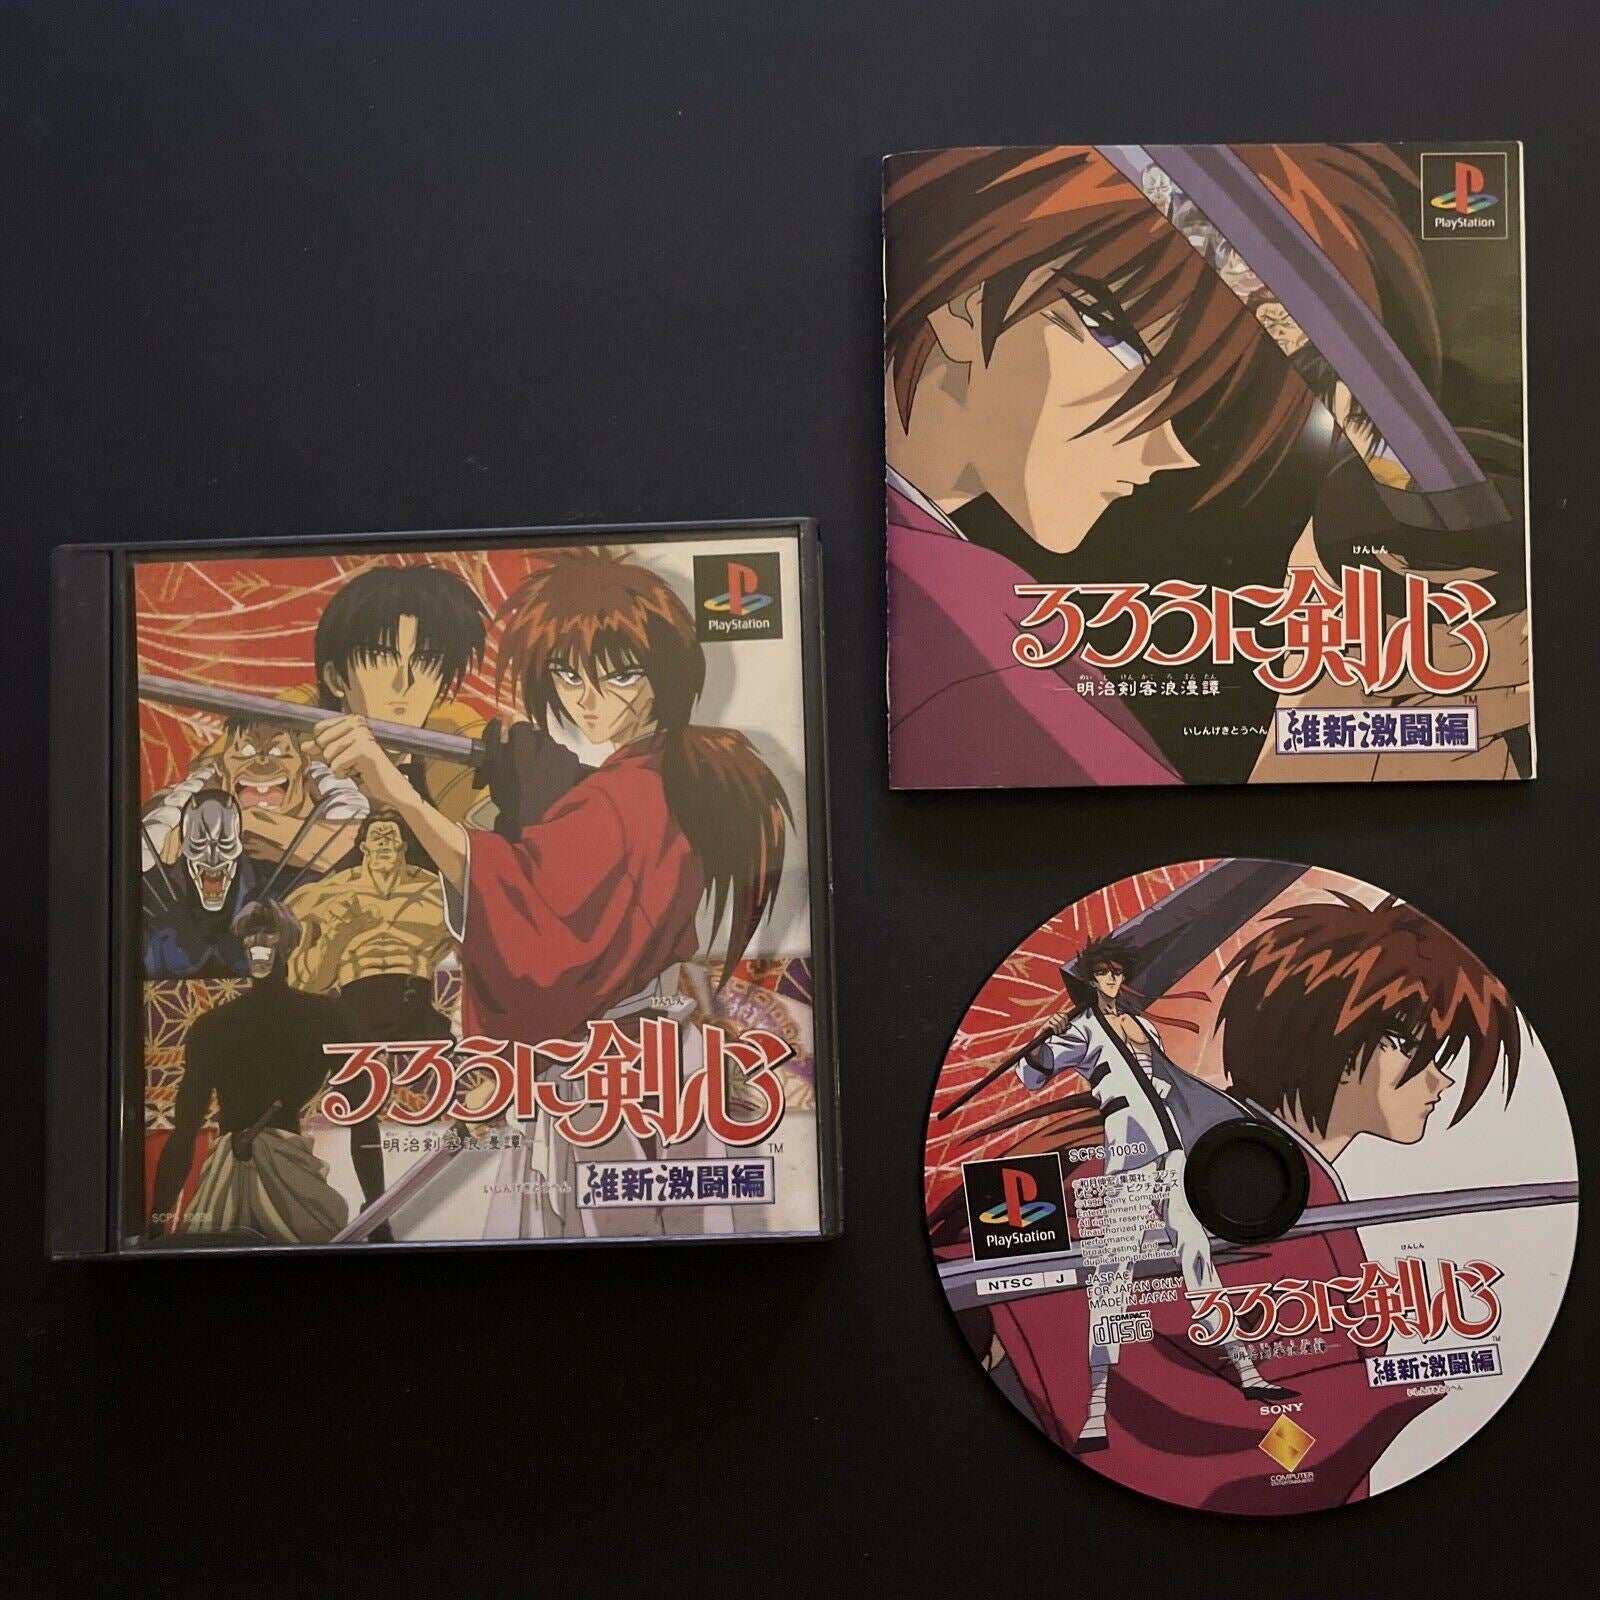 Rurouni Kenshin: Meiji Kenkaku Romantan: Ishin Gekitou Hen (PS1 / 1996) -  Himura Kenshin [LongPlay] 